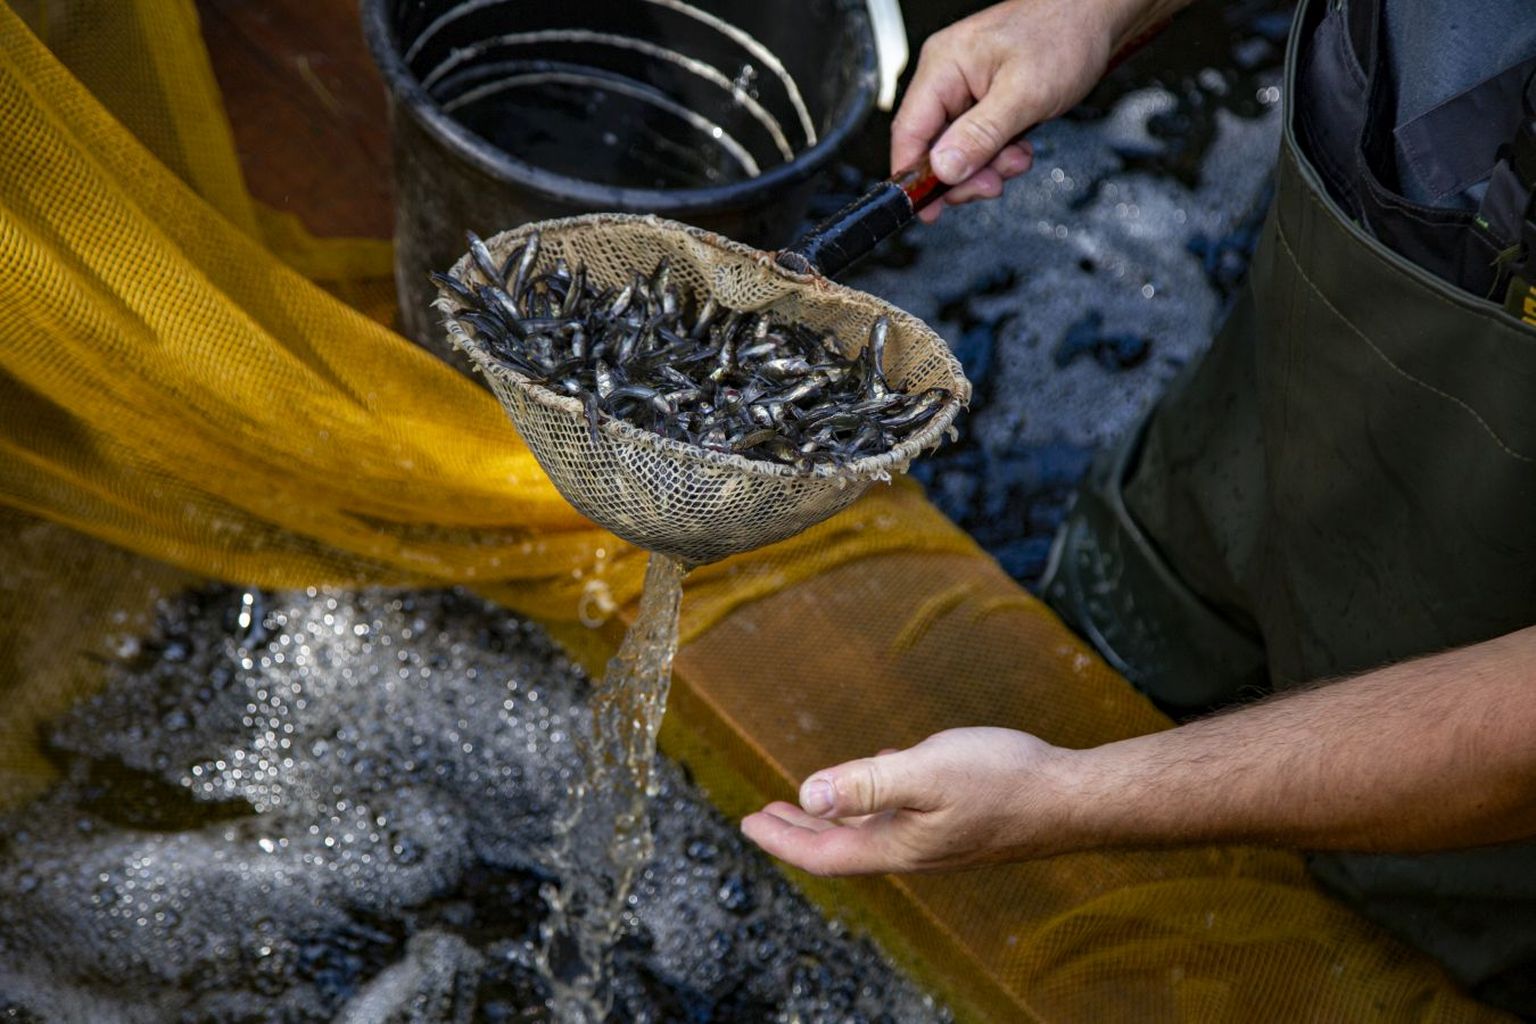 Zinātniskā institūta "BIOR" Tomes zivjaudzētavas zandartu mazuļi, kas tiks ielaisti Daugavā, turpinot AS "Latvenergo" zivju resursu kompensācijas pasākumus.